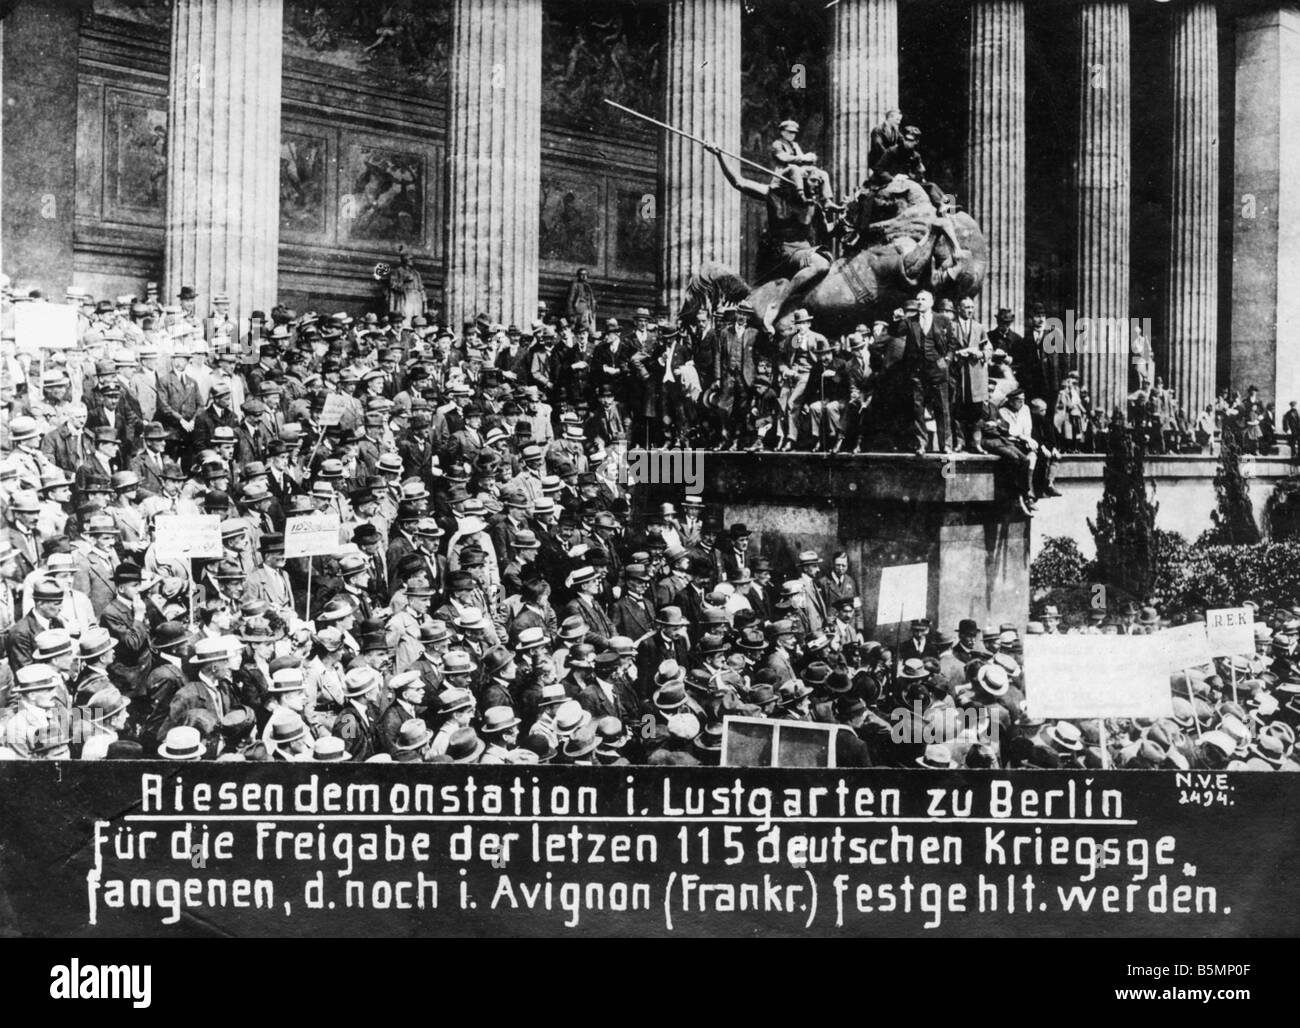 8 1919 0 0 A2 di dimostrazione per i prigionieri di guerra Berlino 1919 La fine della I Guerra Mondiale Berlino 1919 di dimostrazione nel Lustgarten per il rilascio Foto Stock